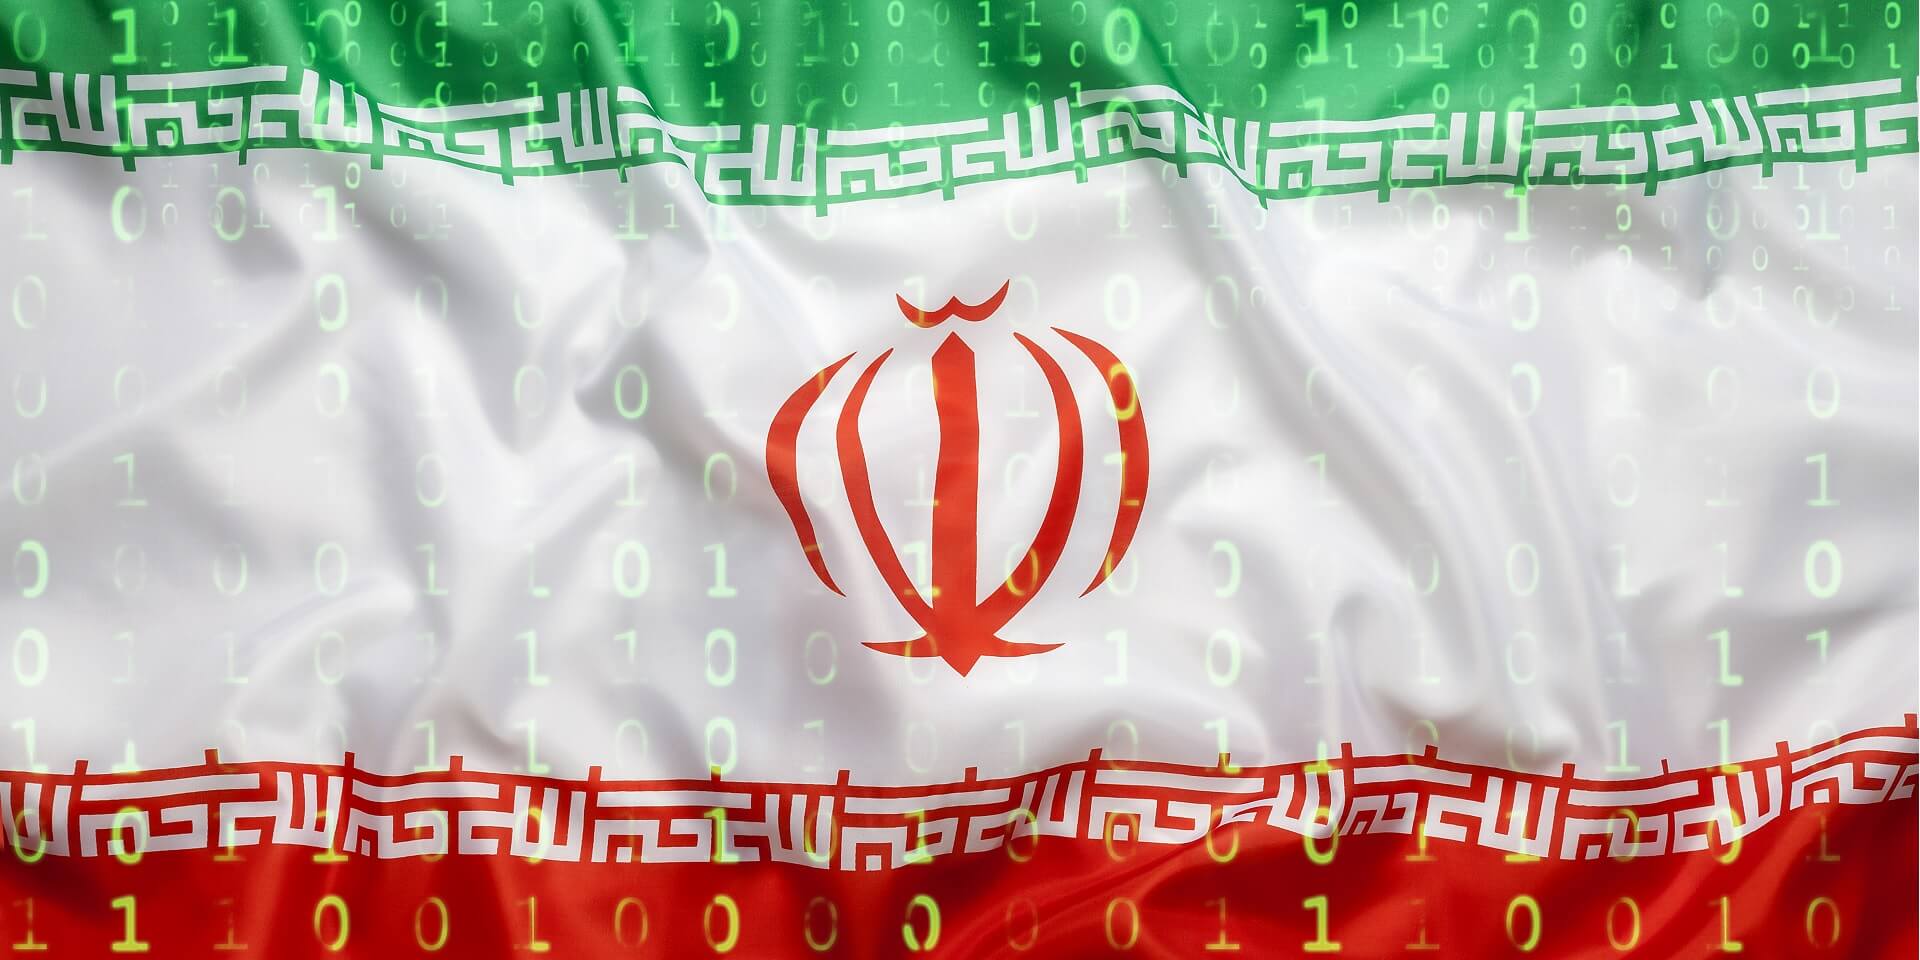 takian.ir iranian oilrig hackers using new backdoor 1